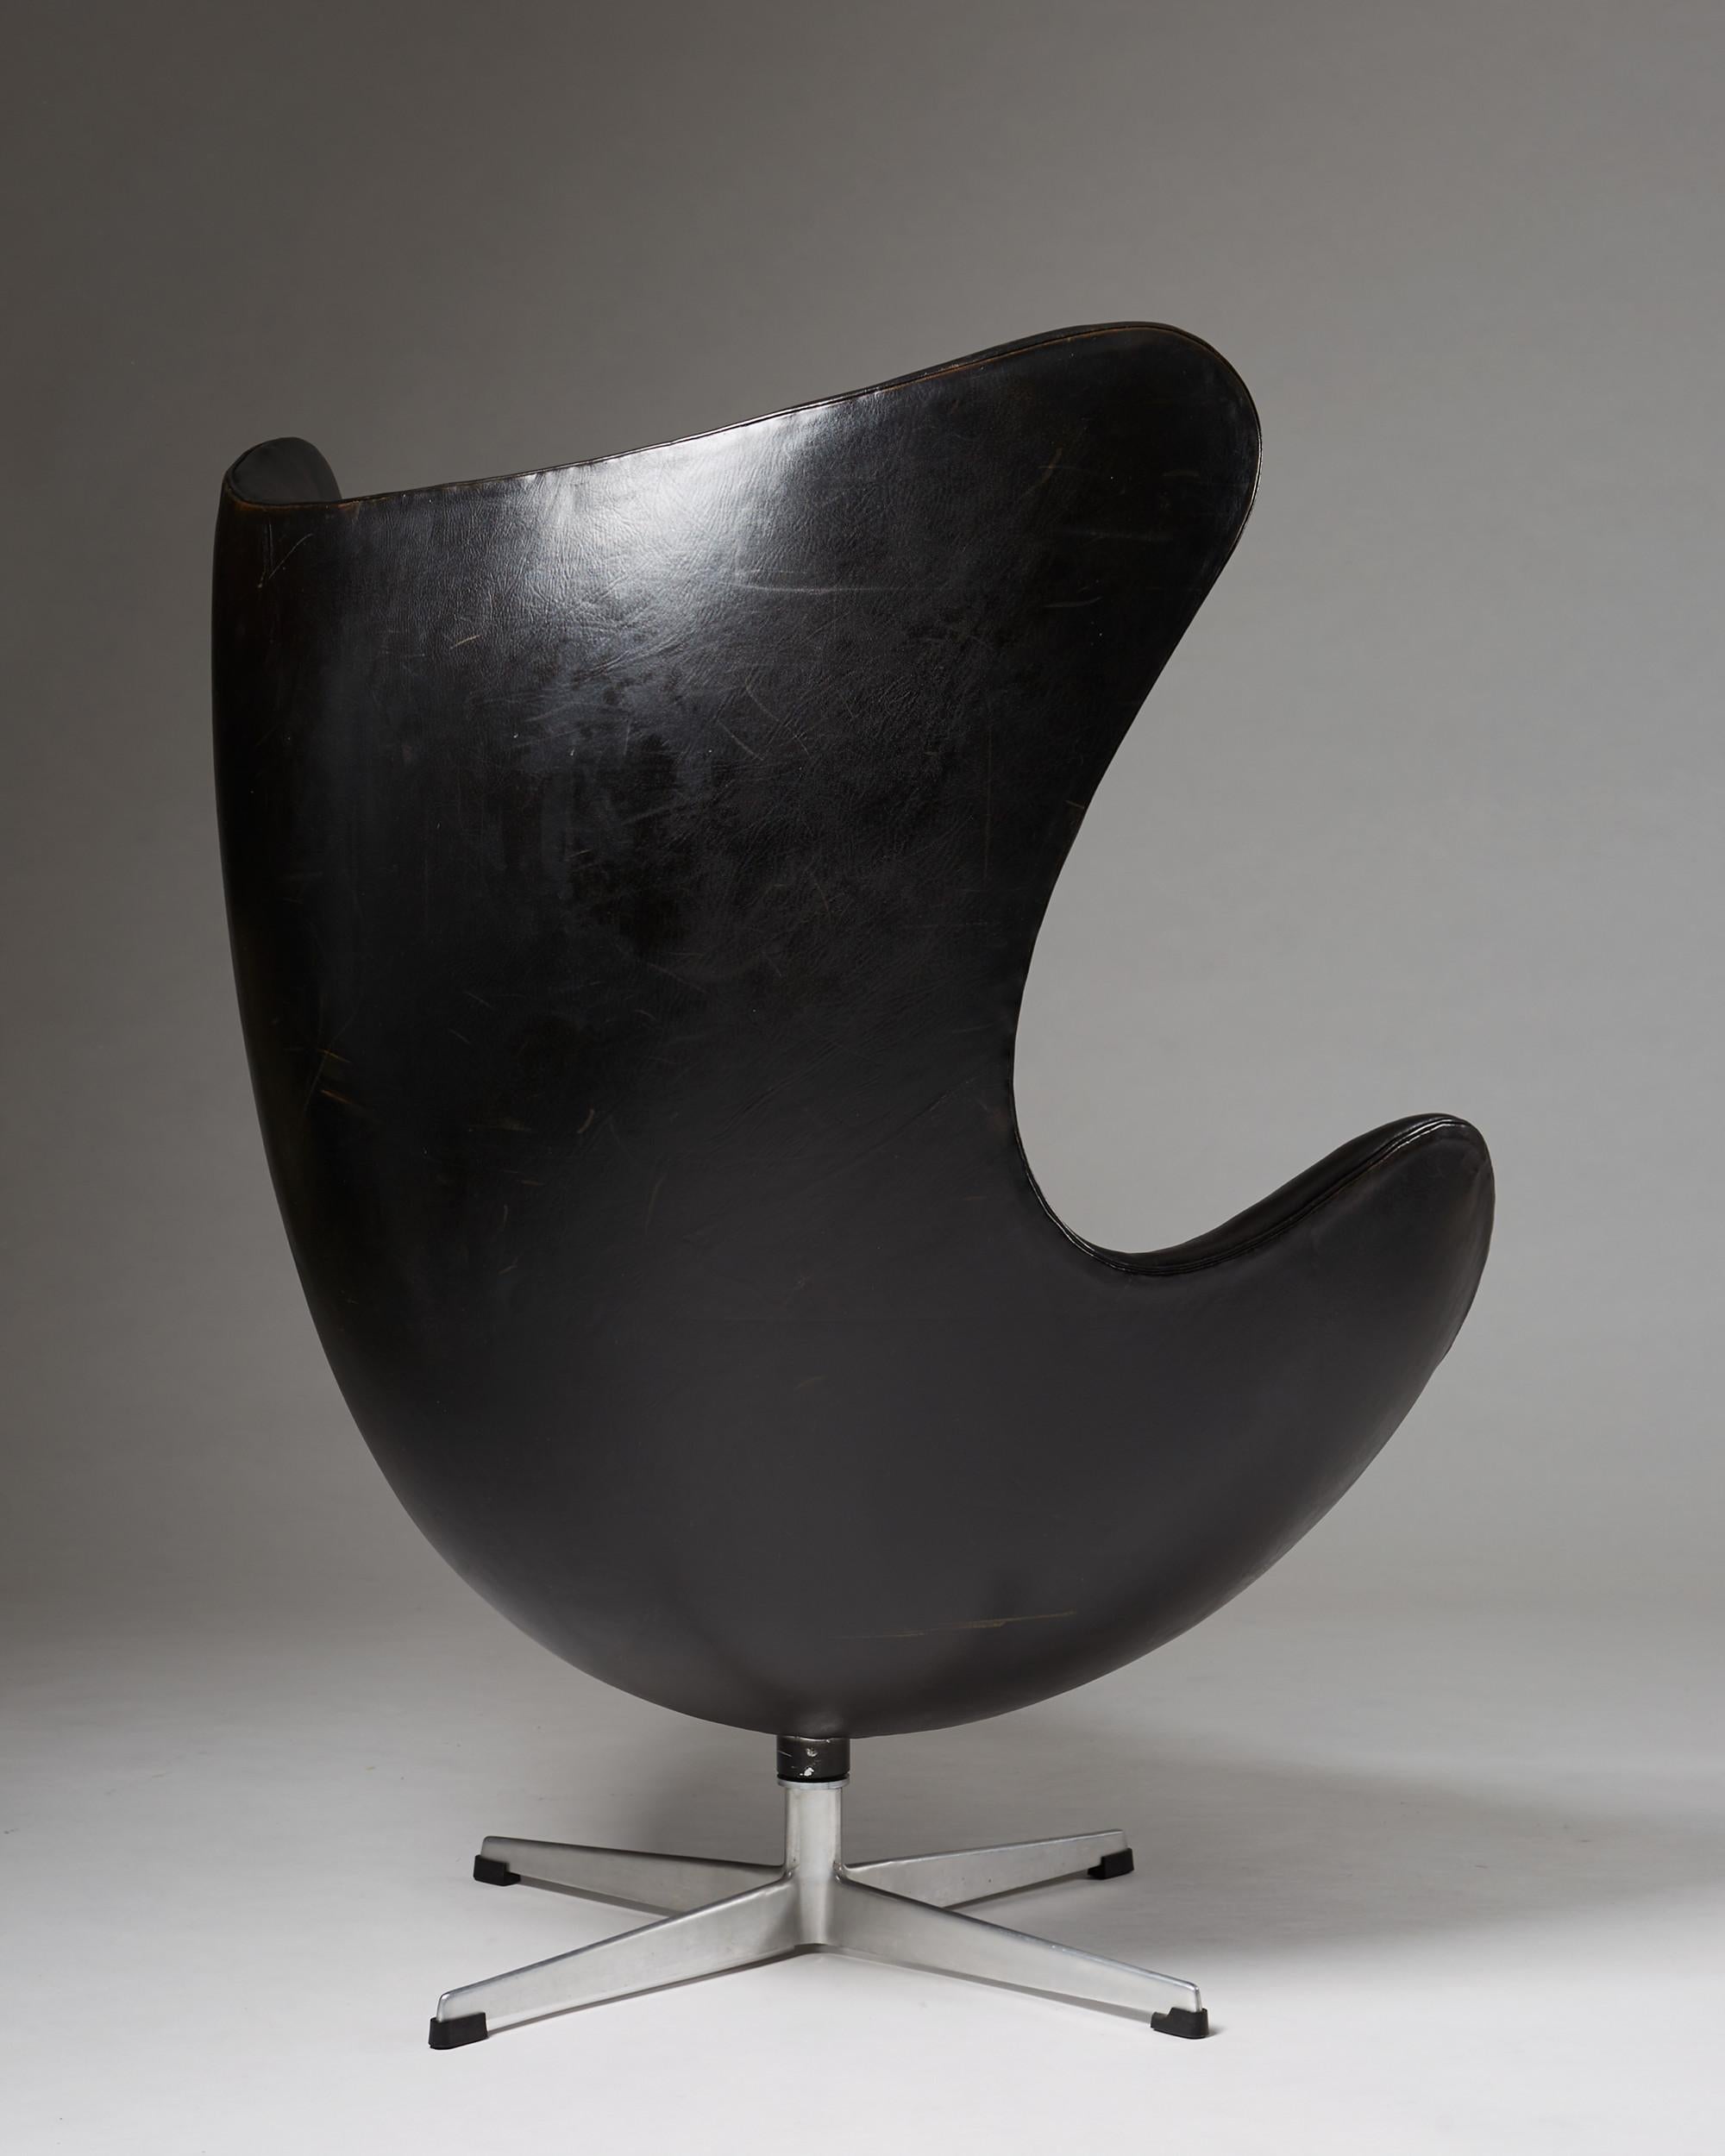 Scandinavian Modern Armchair “Egg Chair” Designed by Arne Jacobsen for Fritz Hansen, Denmark, 1958 For Sale